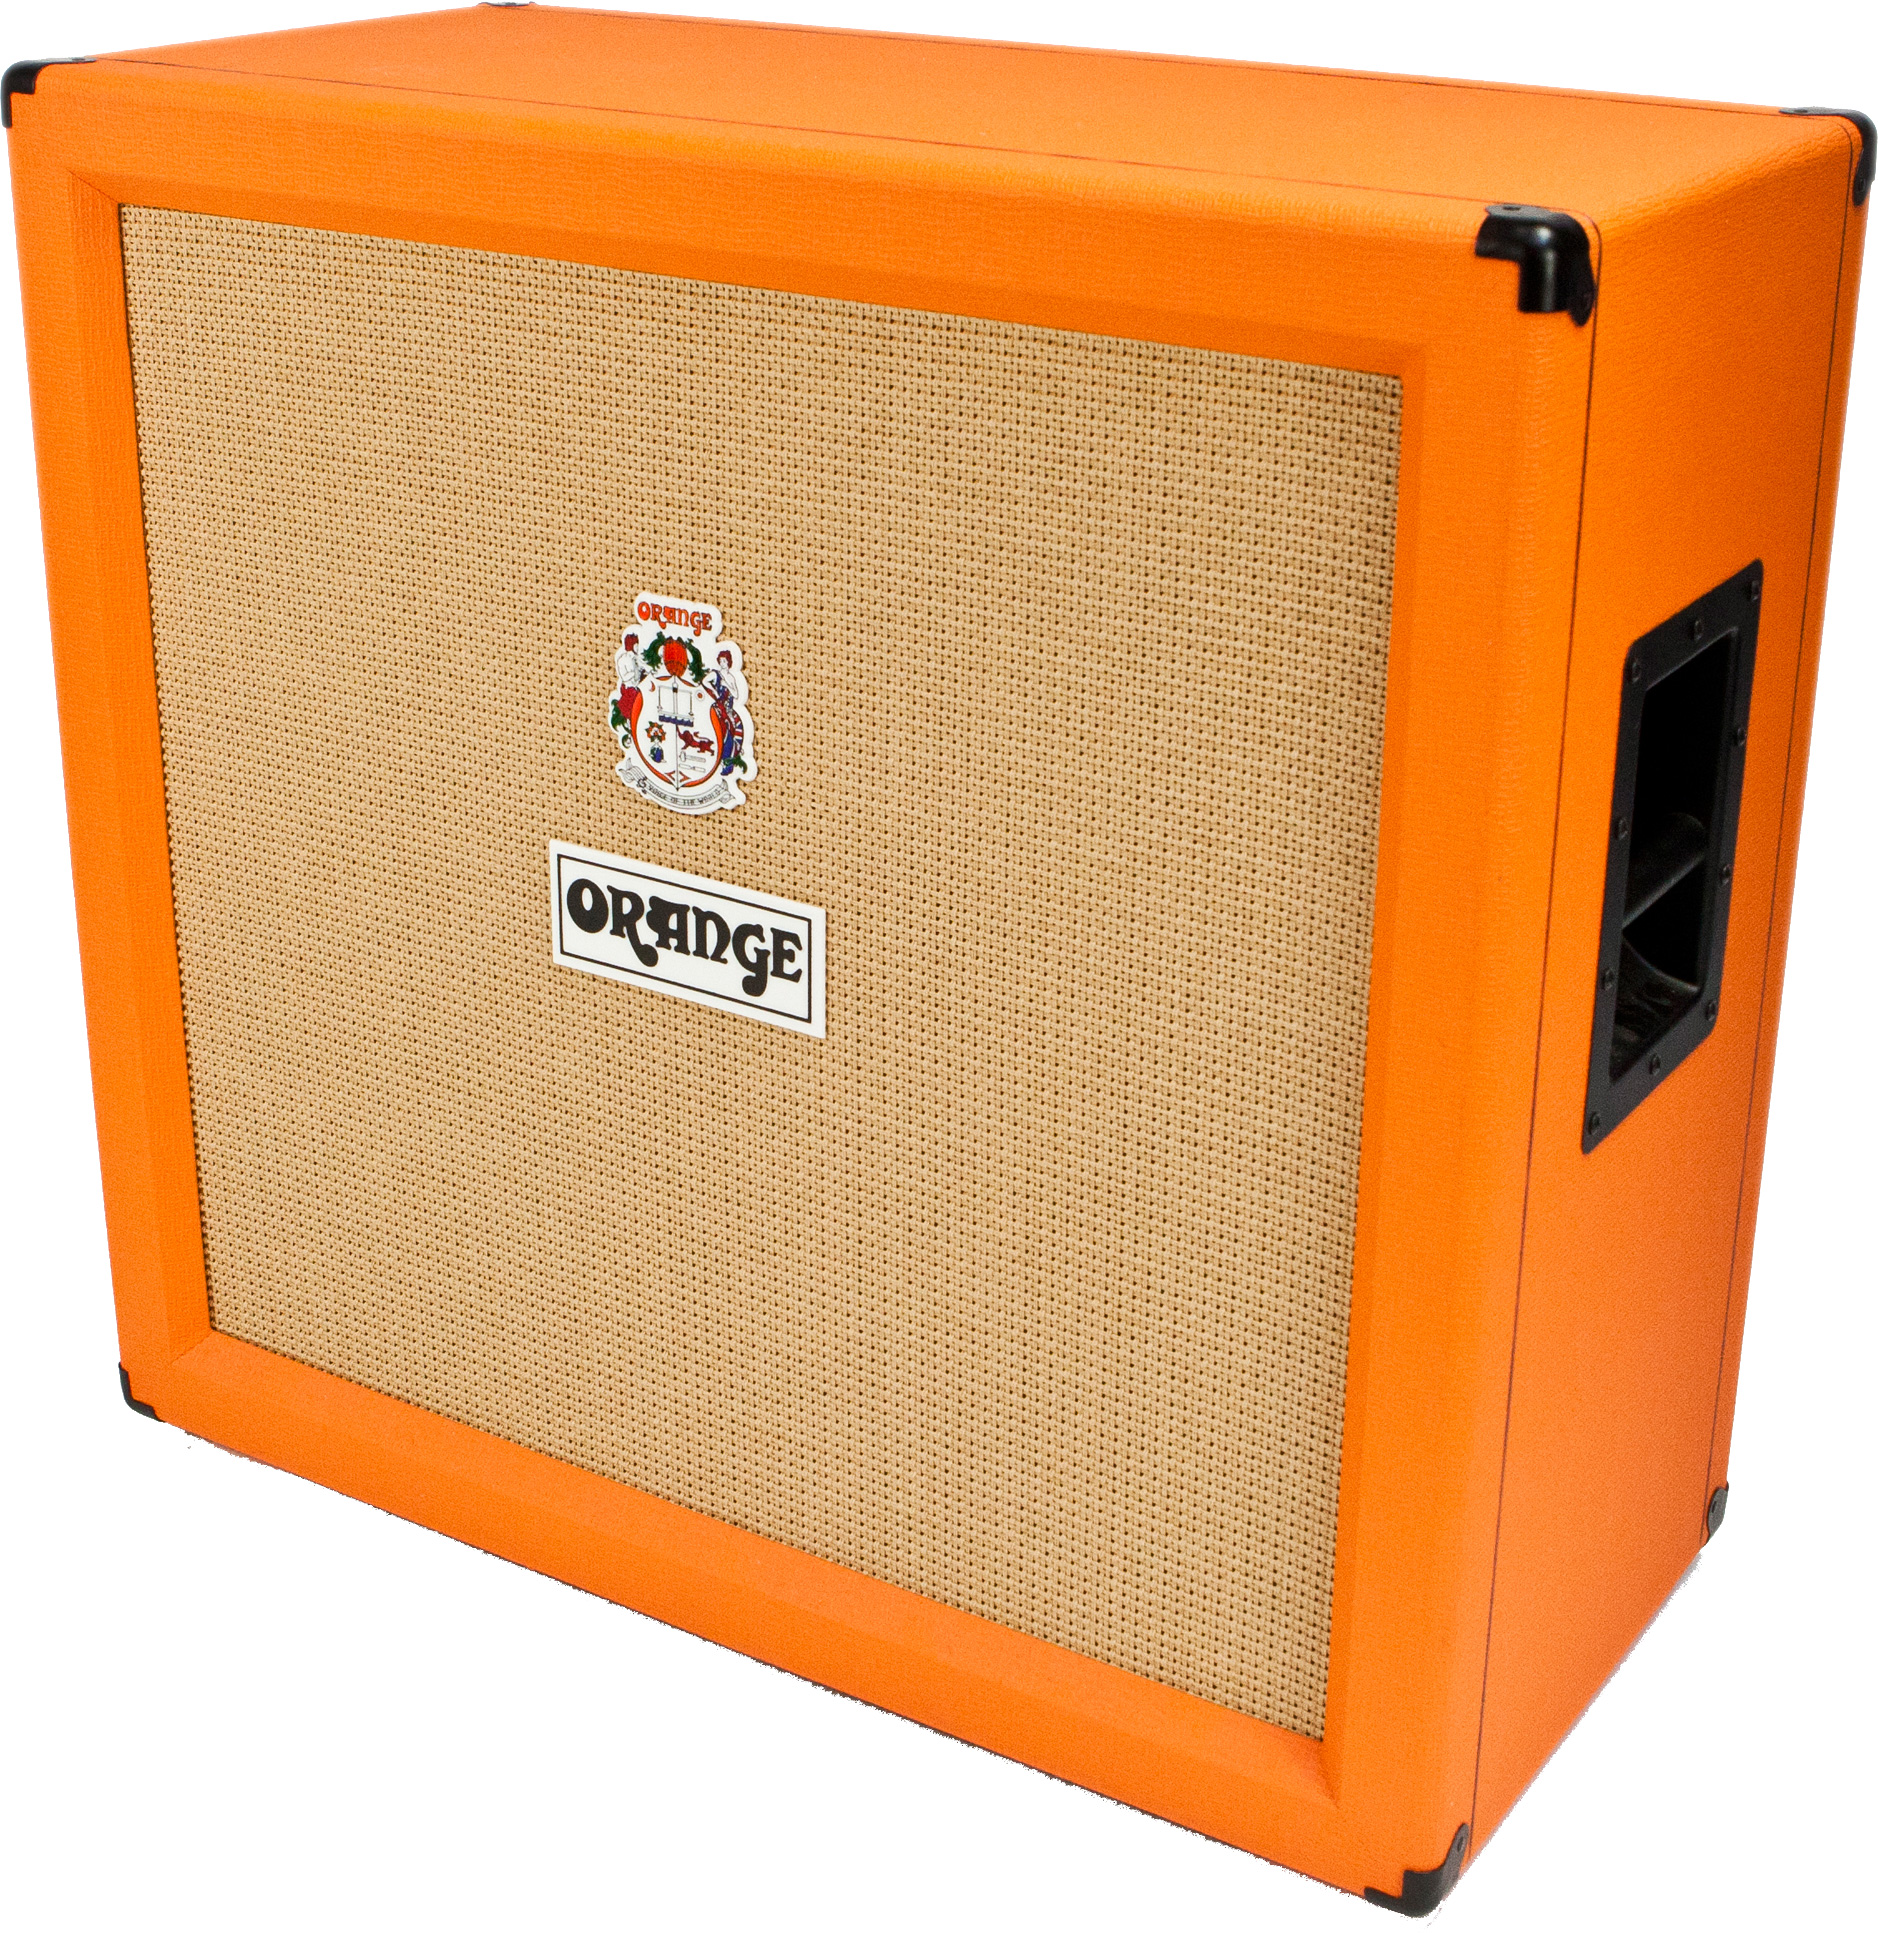 Orange PPC412 Gitarrenbox orange